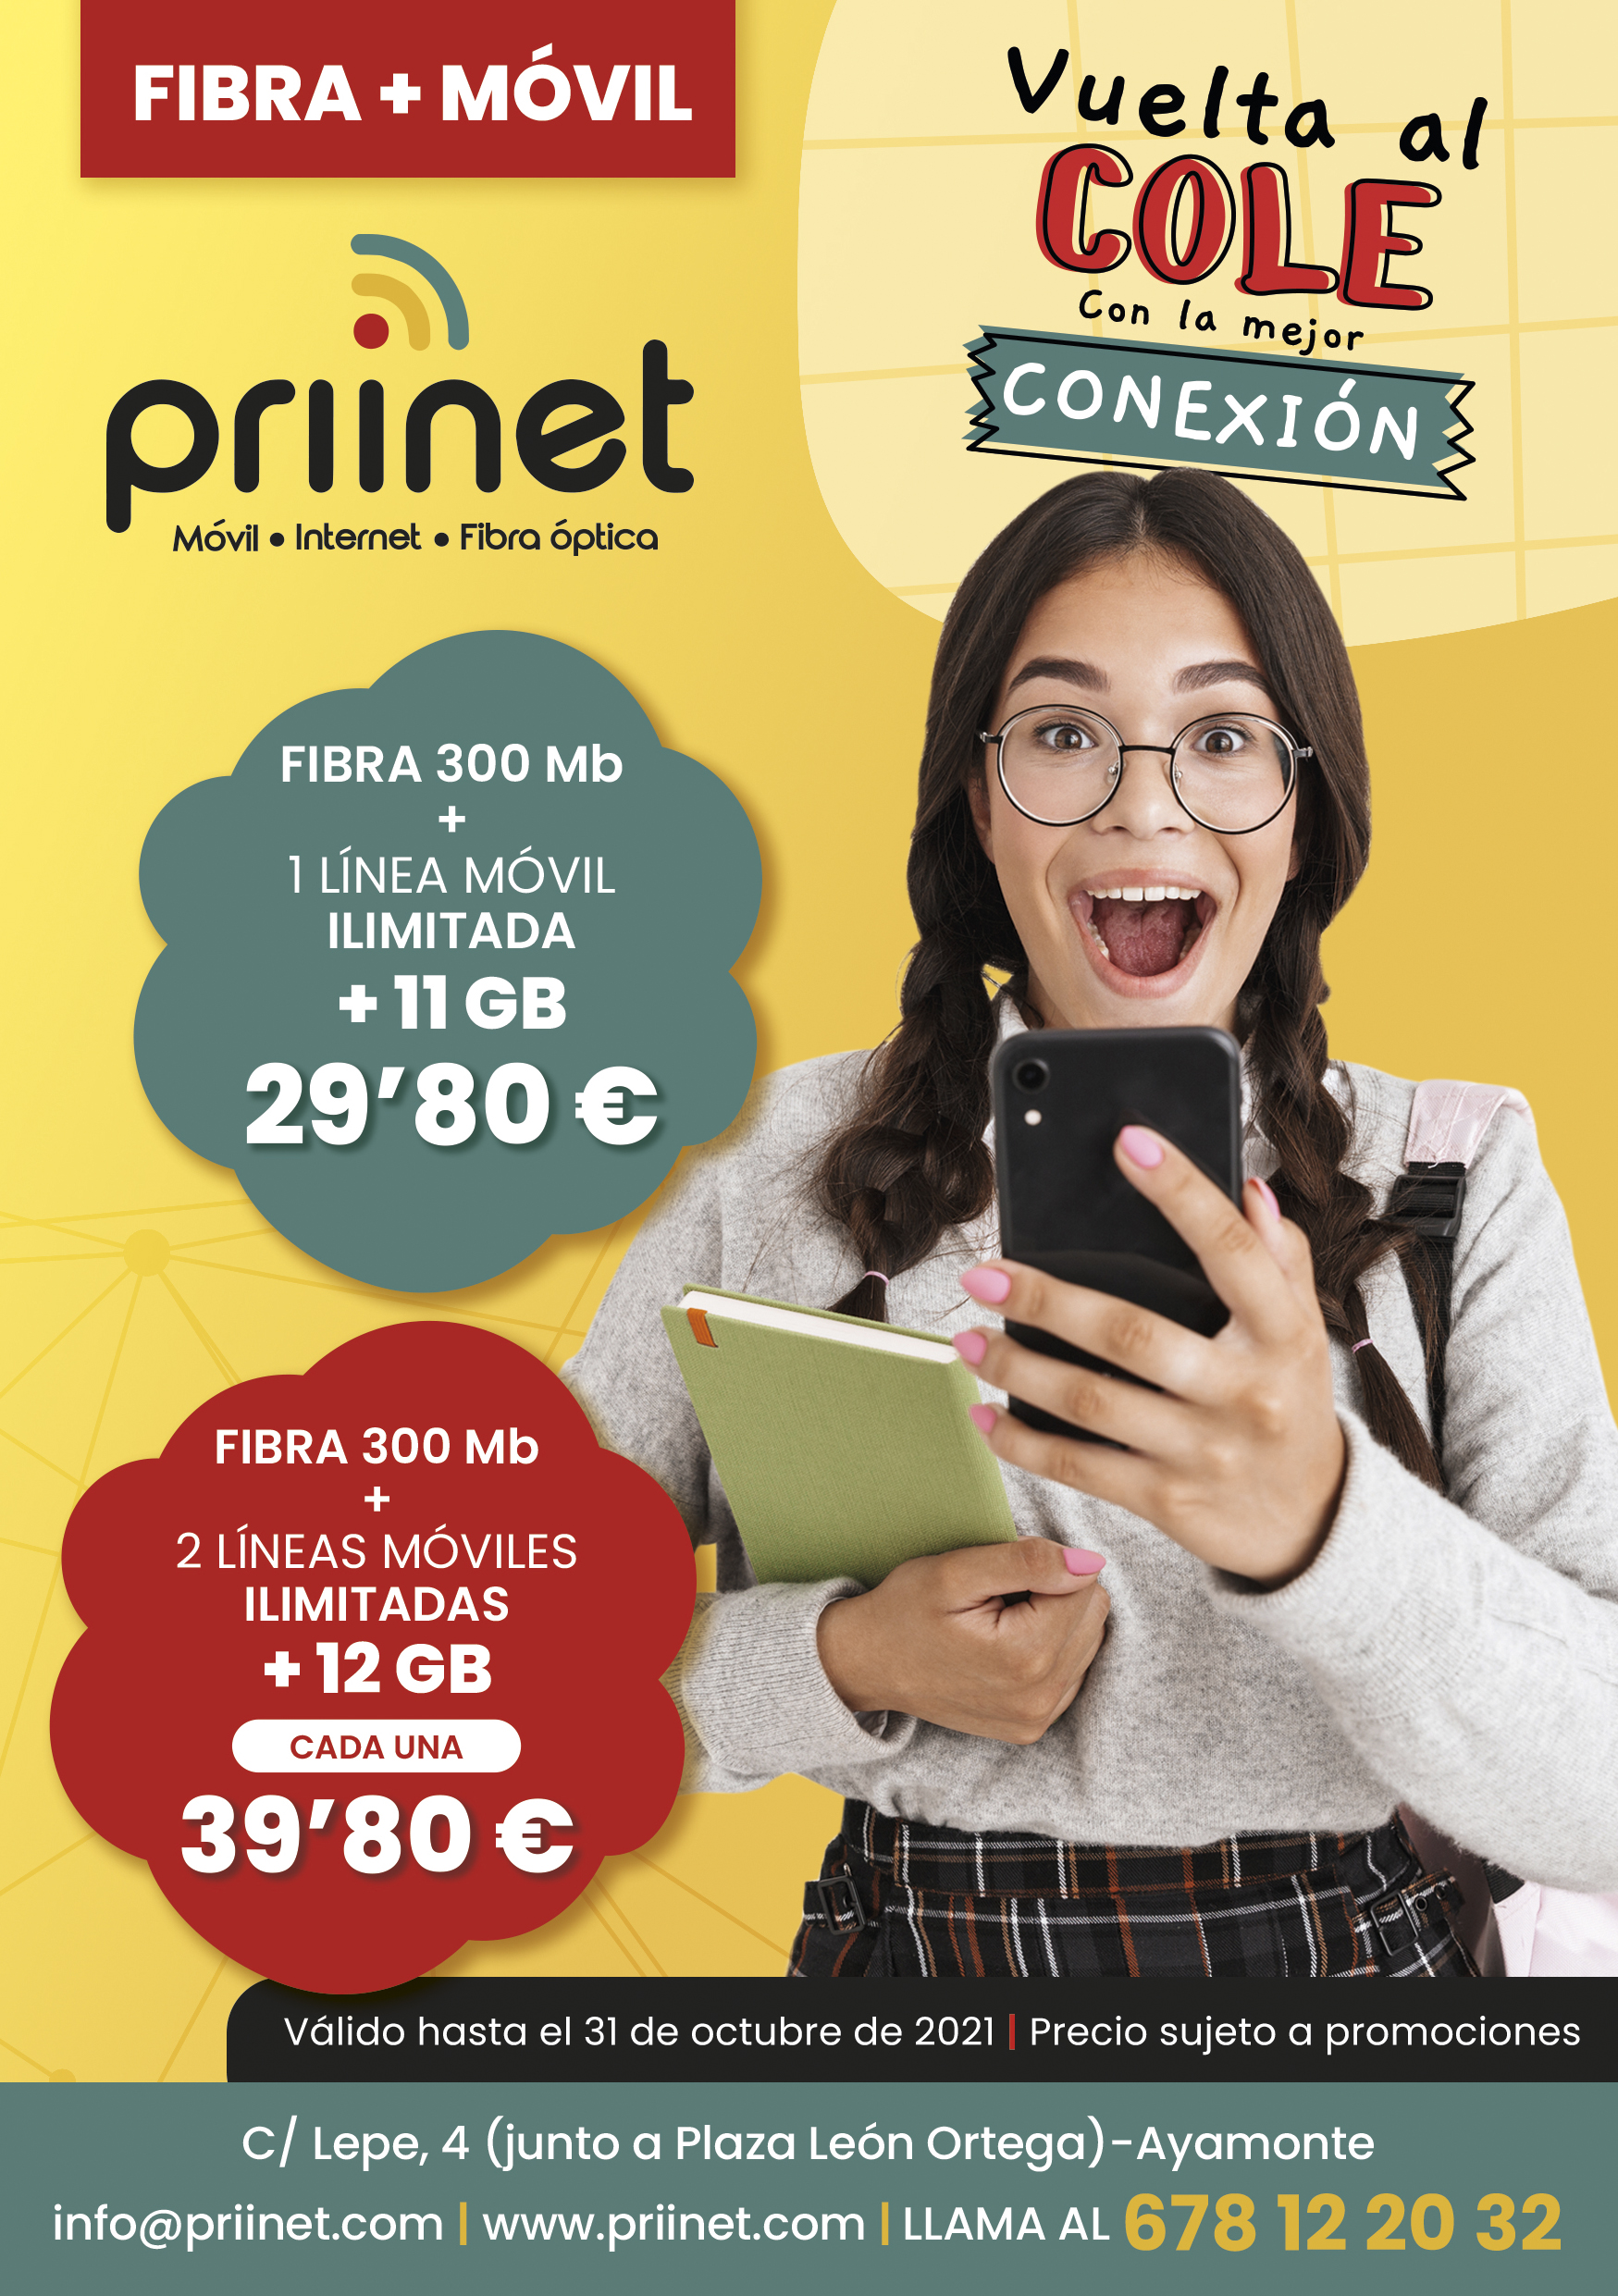 Lluvia de ofertas de Priinet en internet para la al cole – Priinet